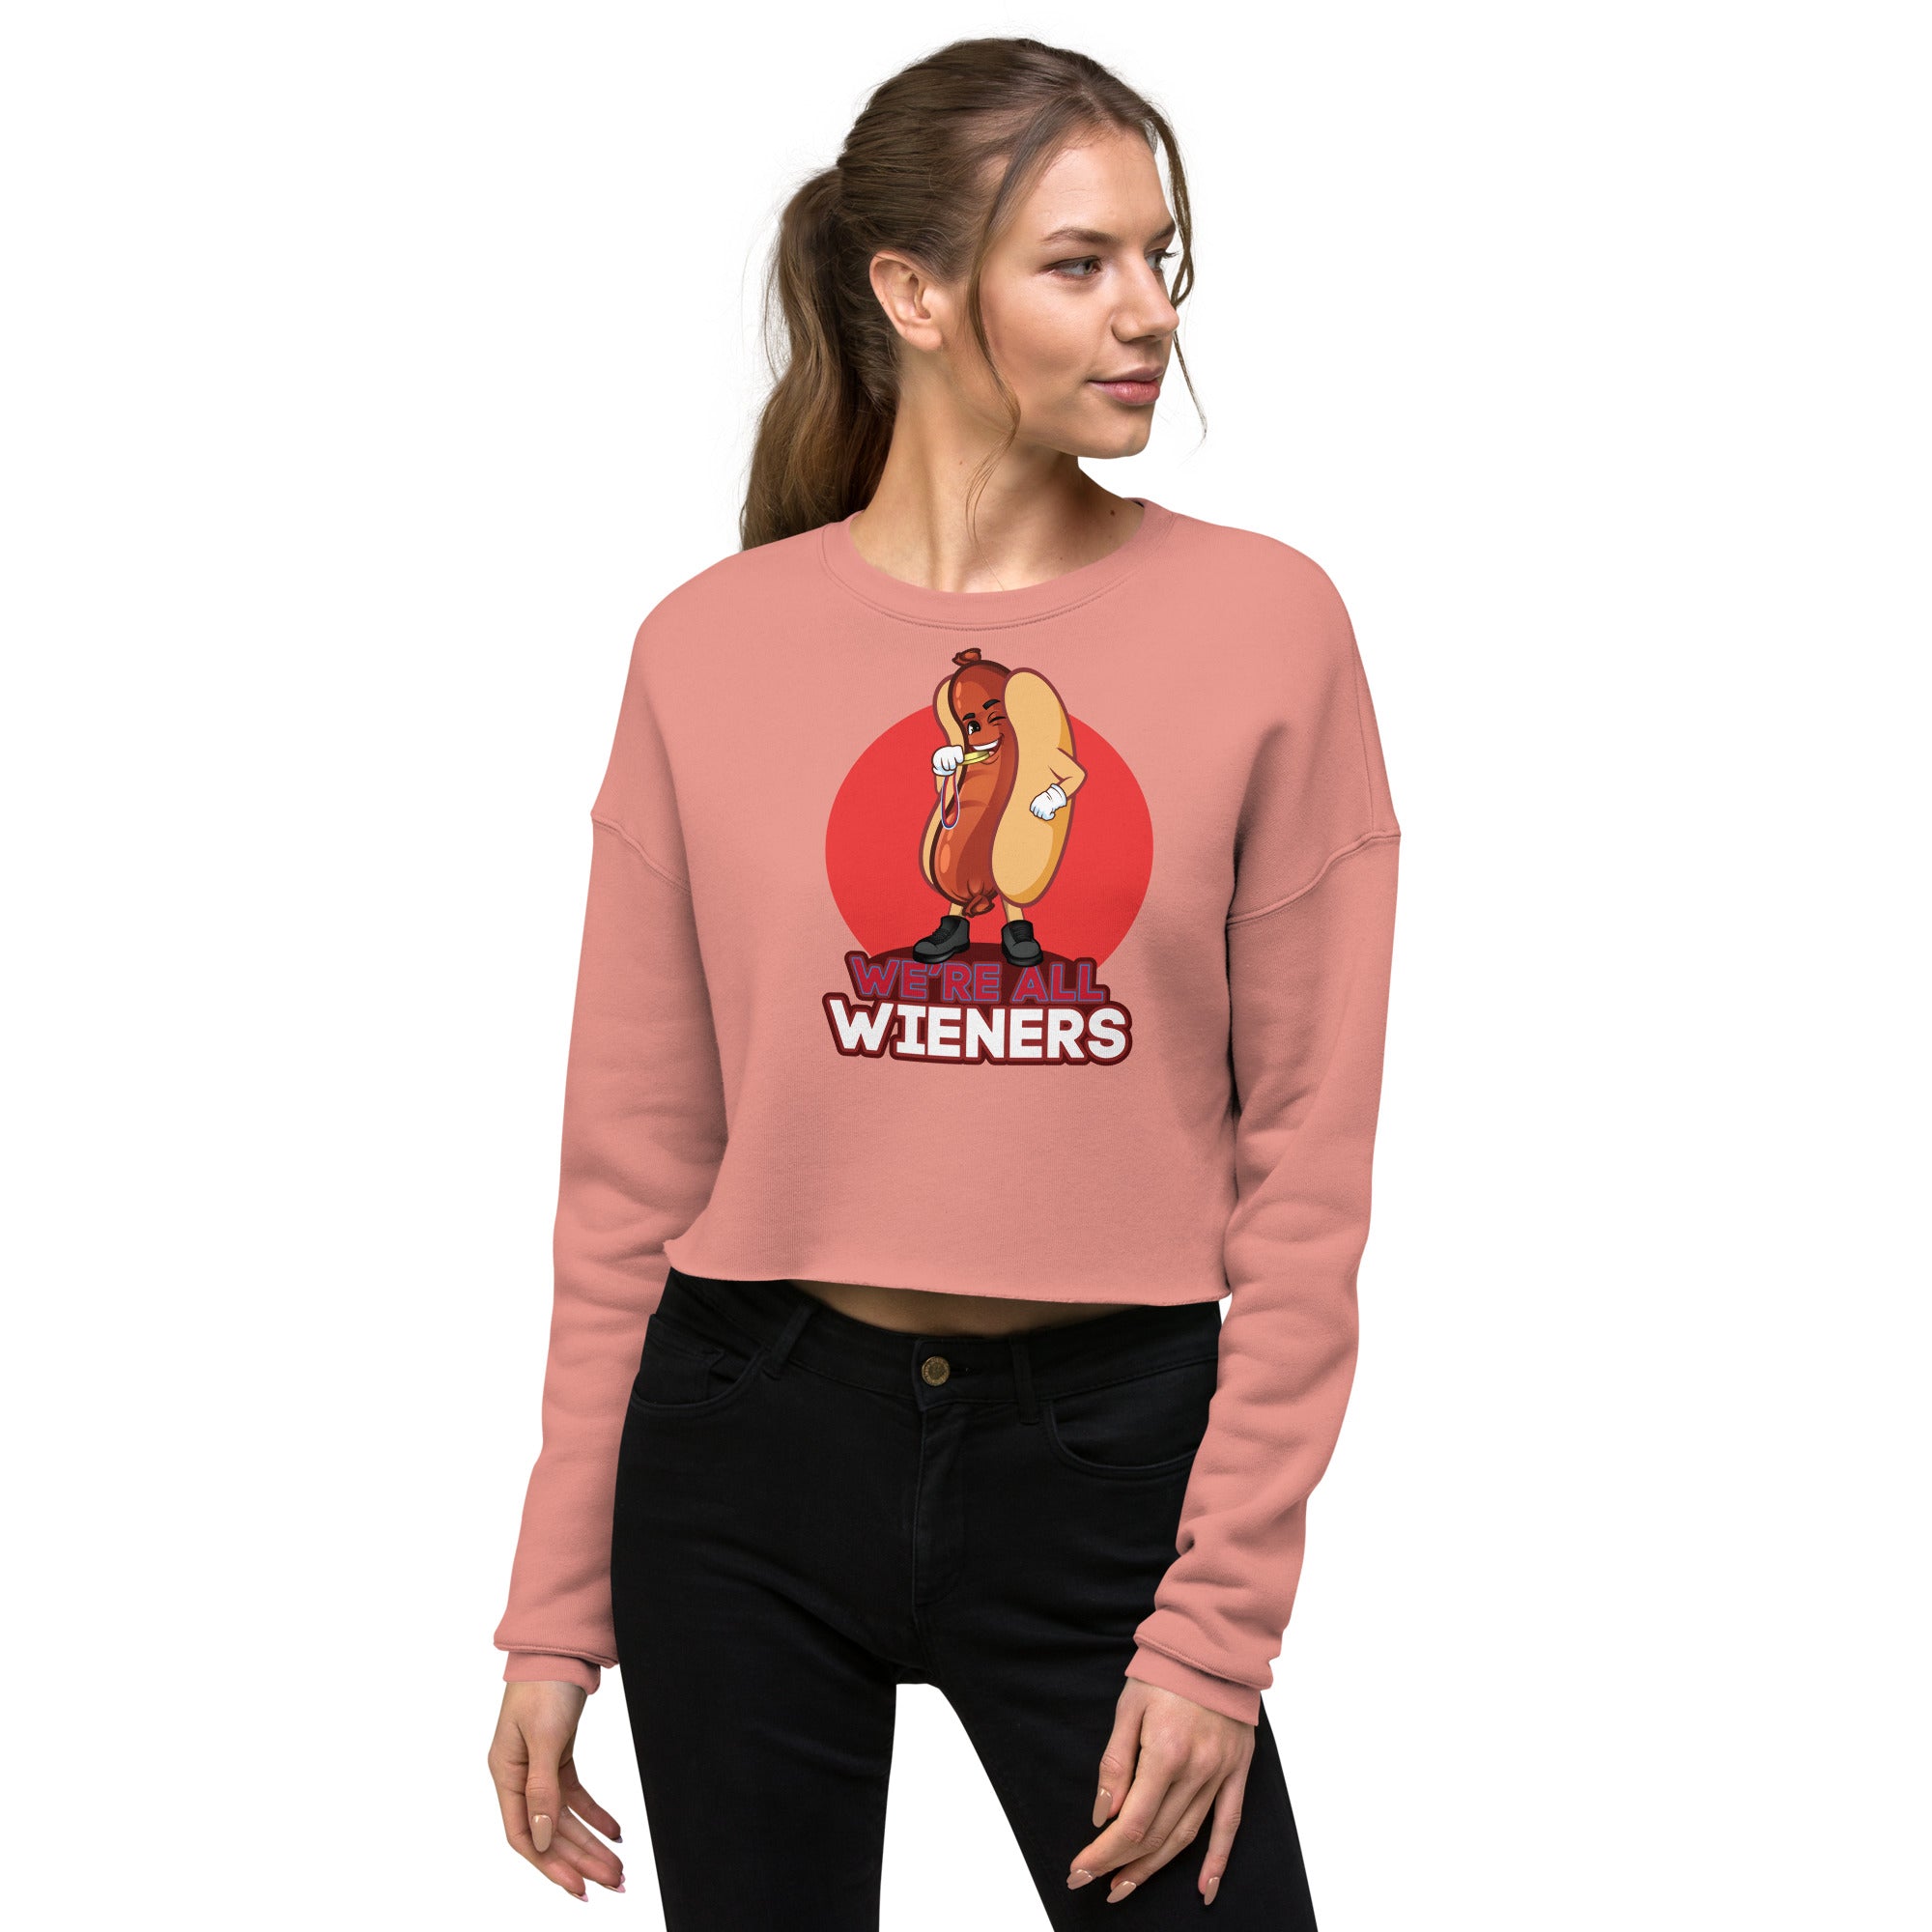 We're All Wieners Women's Crop Sweatshirt - Red